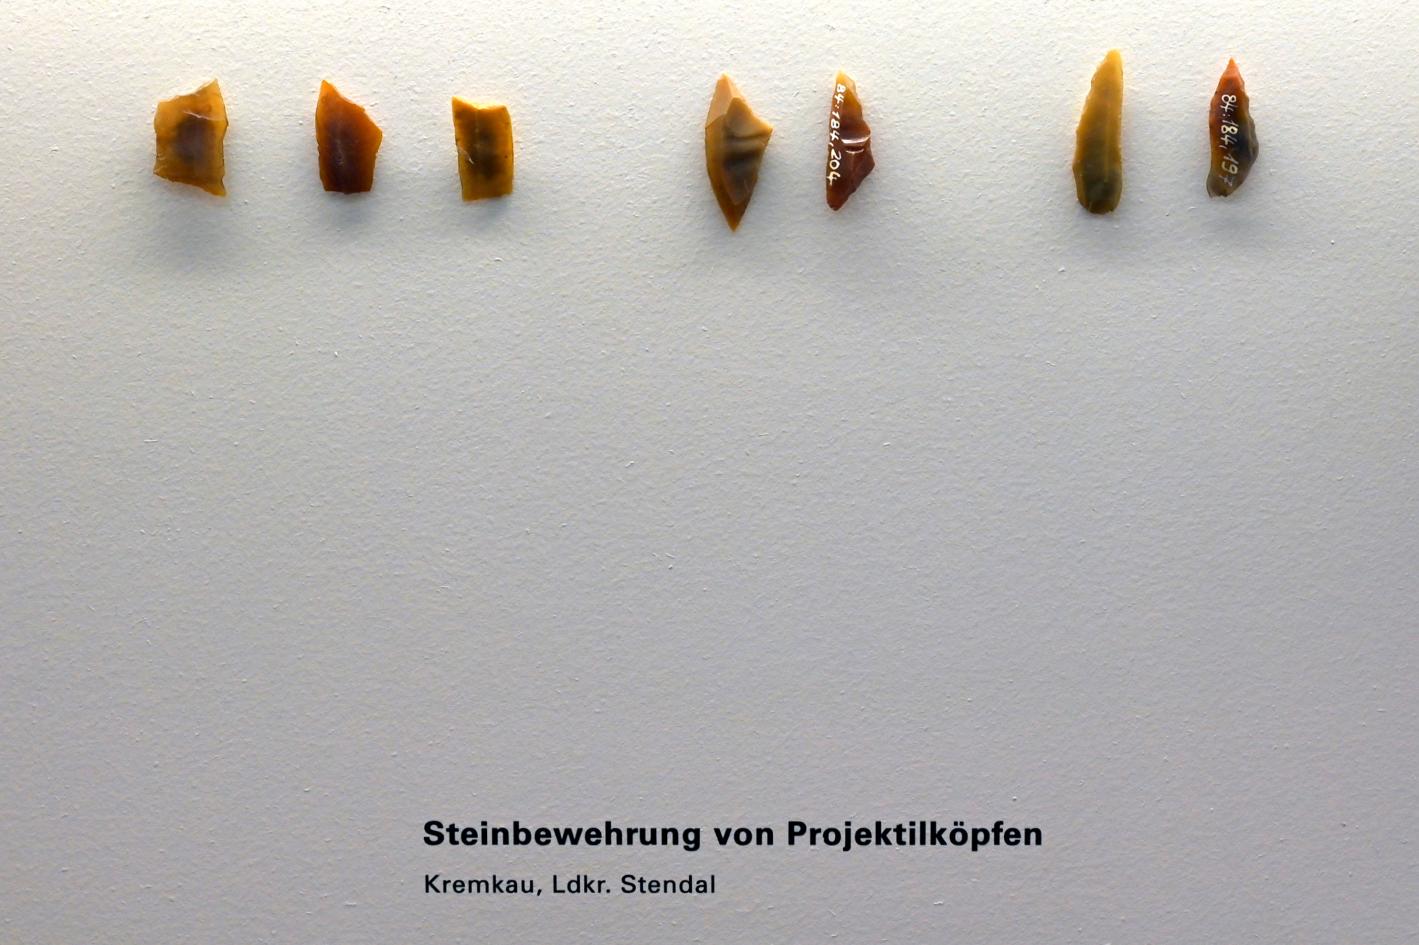 Steinbewehrung von Projektilköpfen, Mesolithikum, 9500 - 5500 v. Chr.